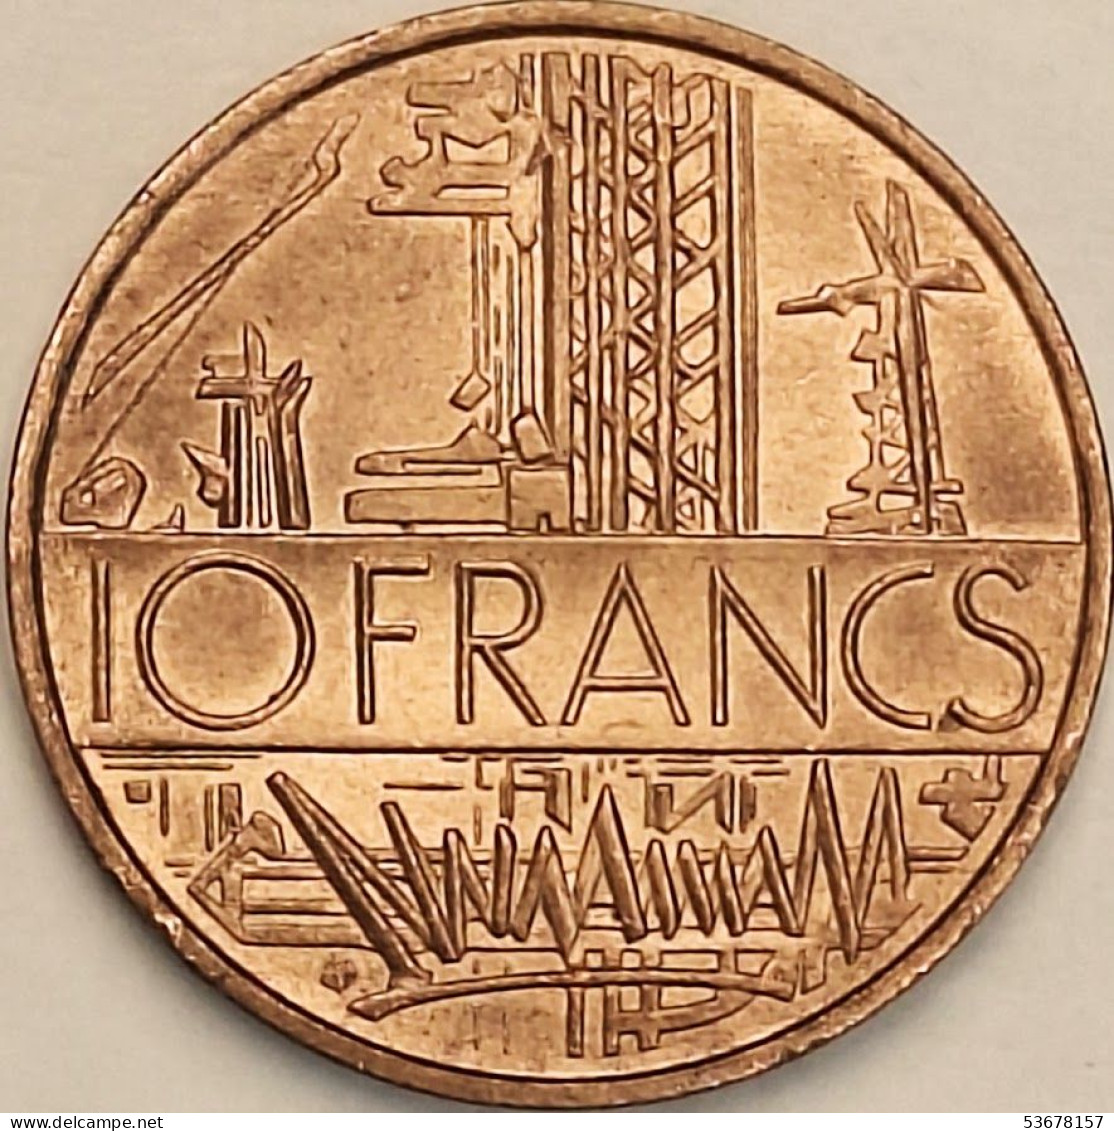 France - 10 Francs 1976, KM# 940 (#4348) - 10 Francs